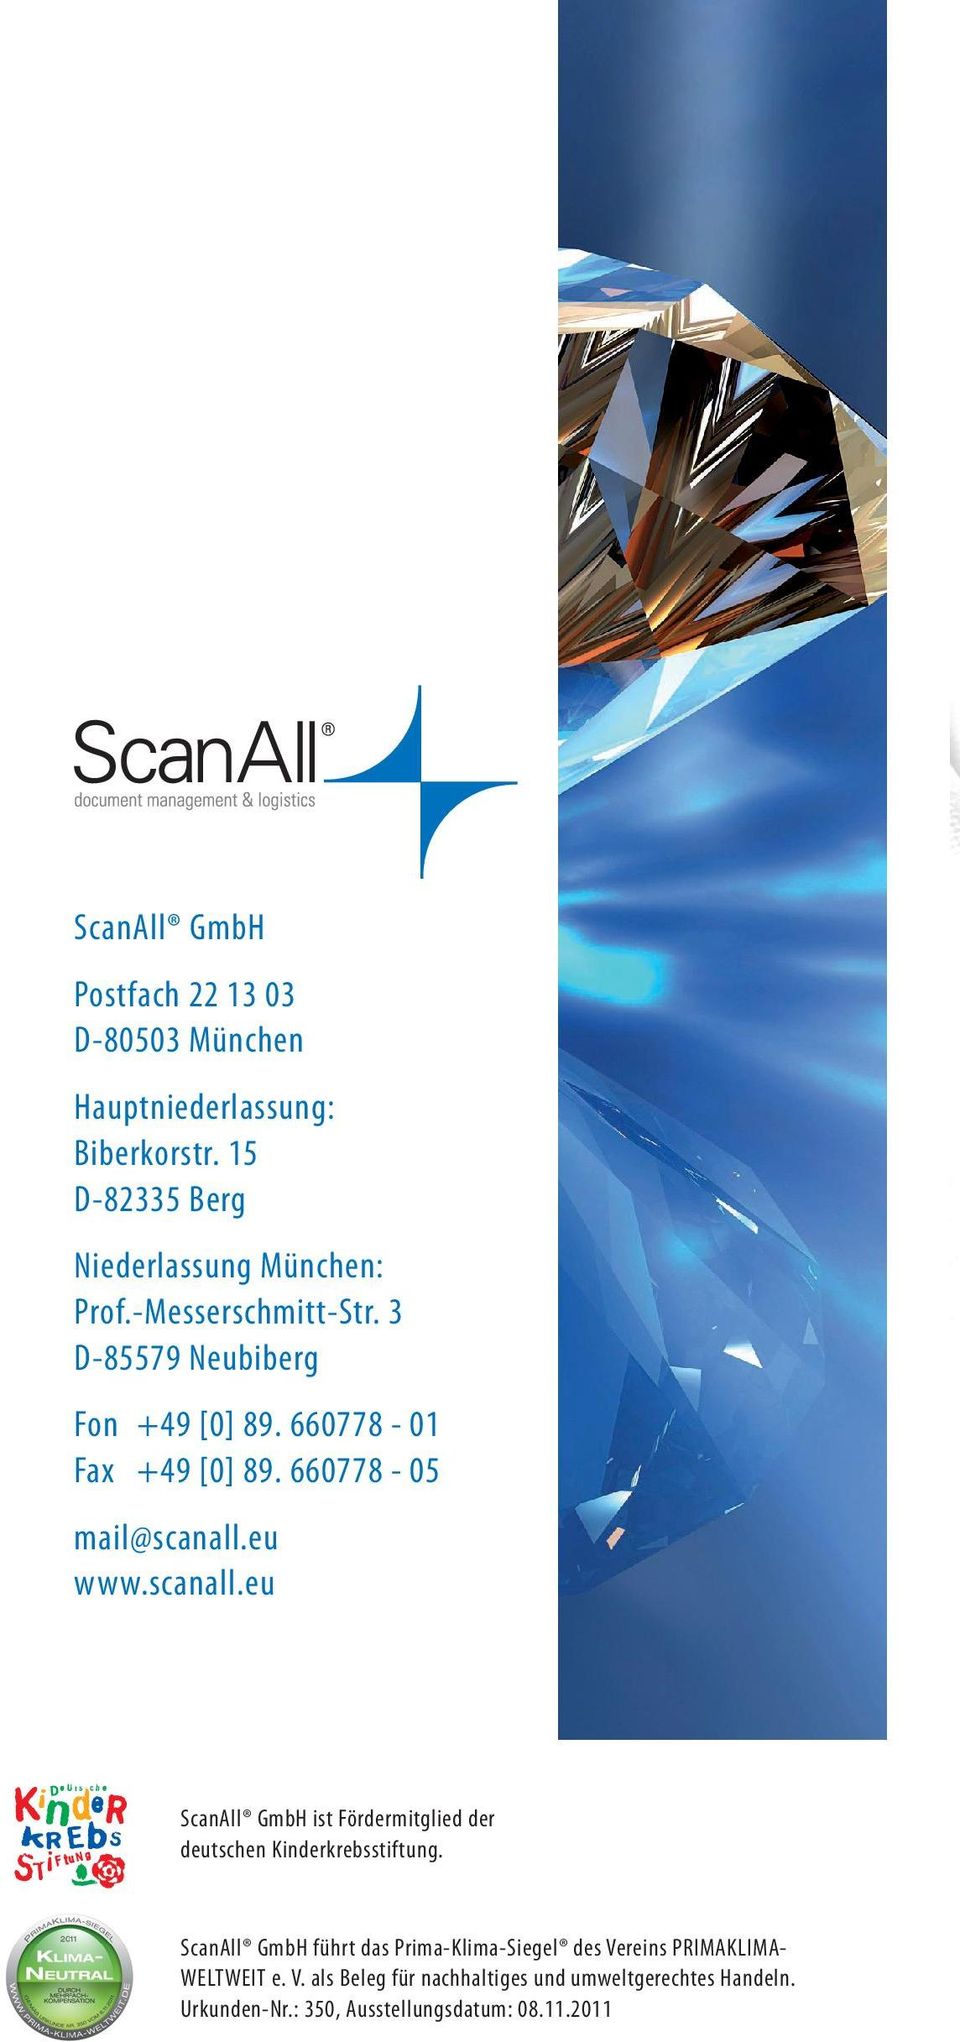 eu www.scanall.eu ScanAll GmbH ist Fördermitglied der deutschen Kinderkrebsstiftung.